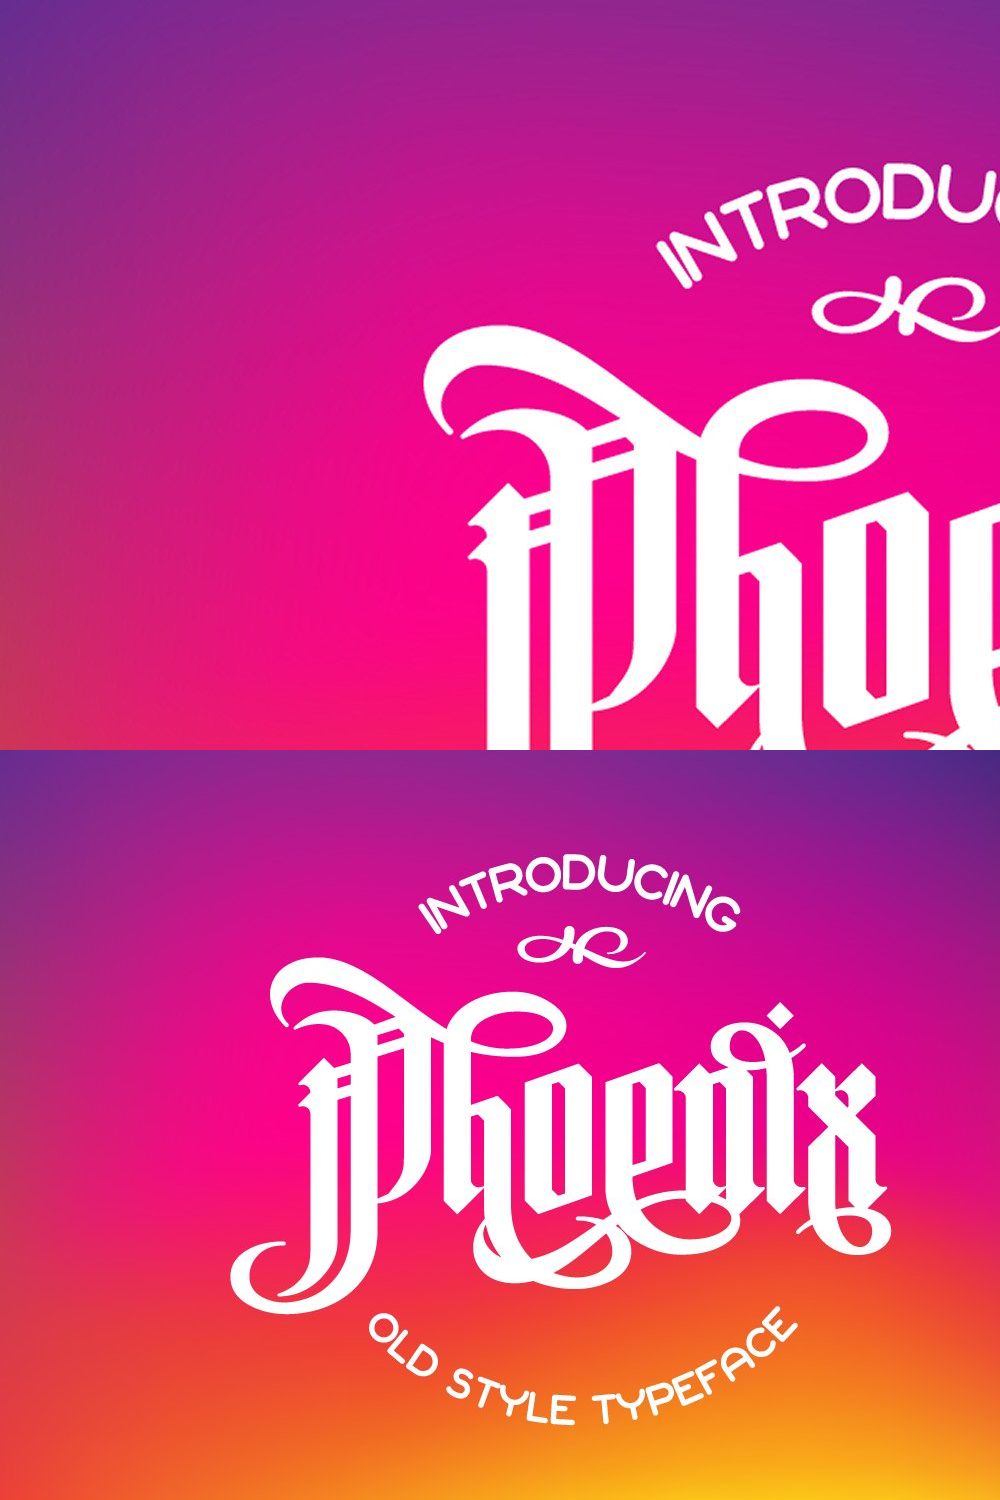 Phoenix gothic font pinterest preview image.